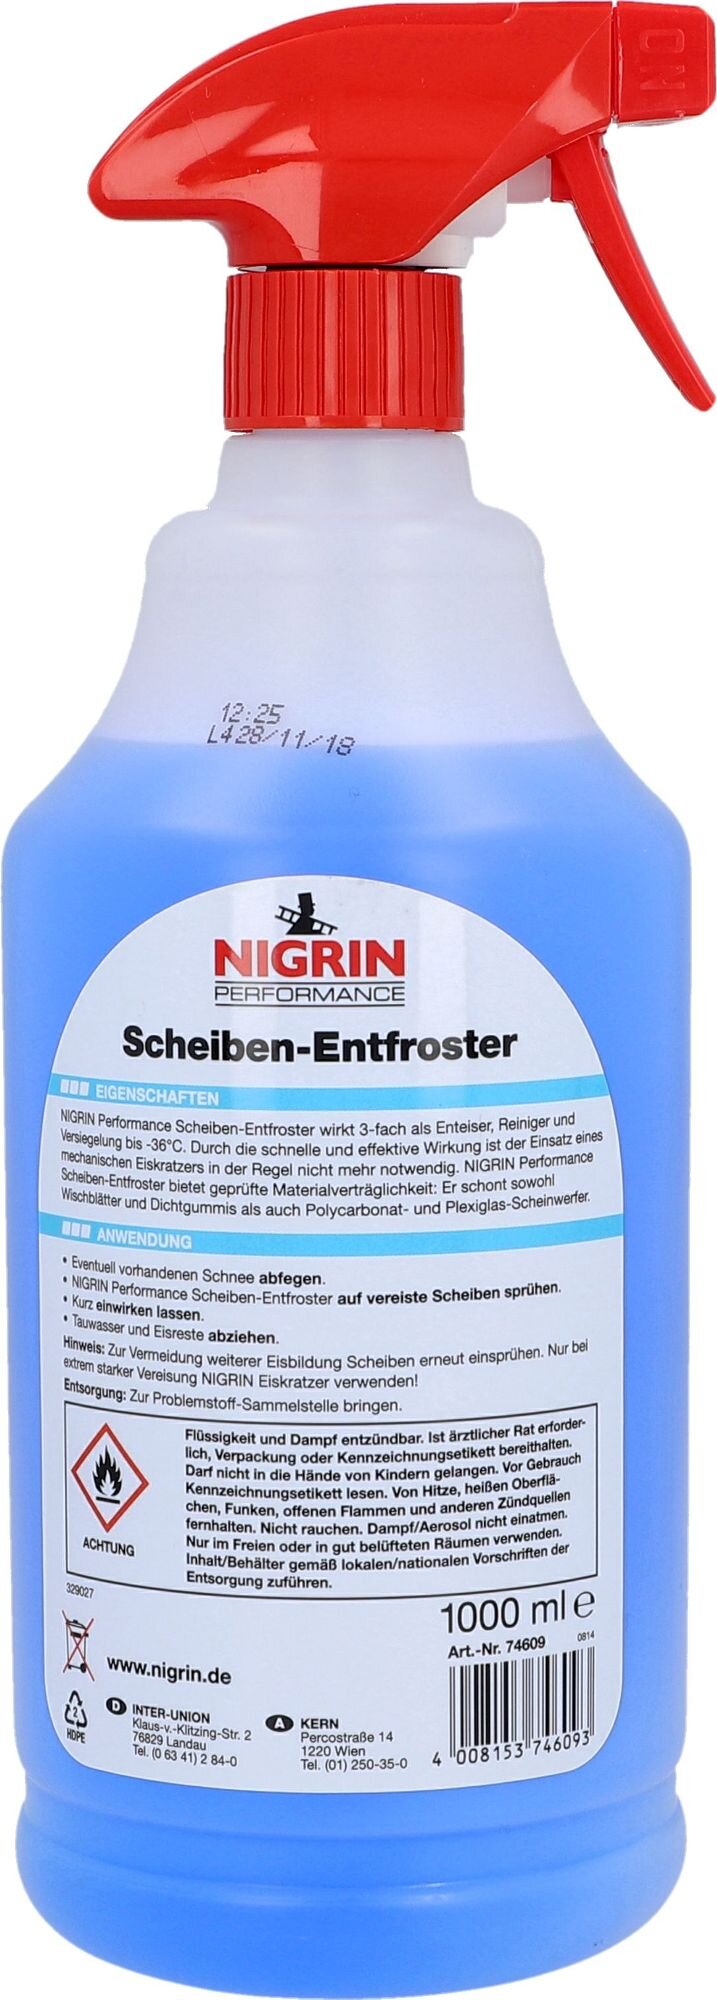 NIGRIN Performance Scheiben- Entfroster 3in1